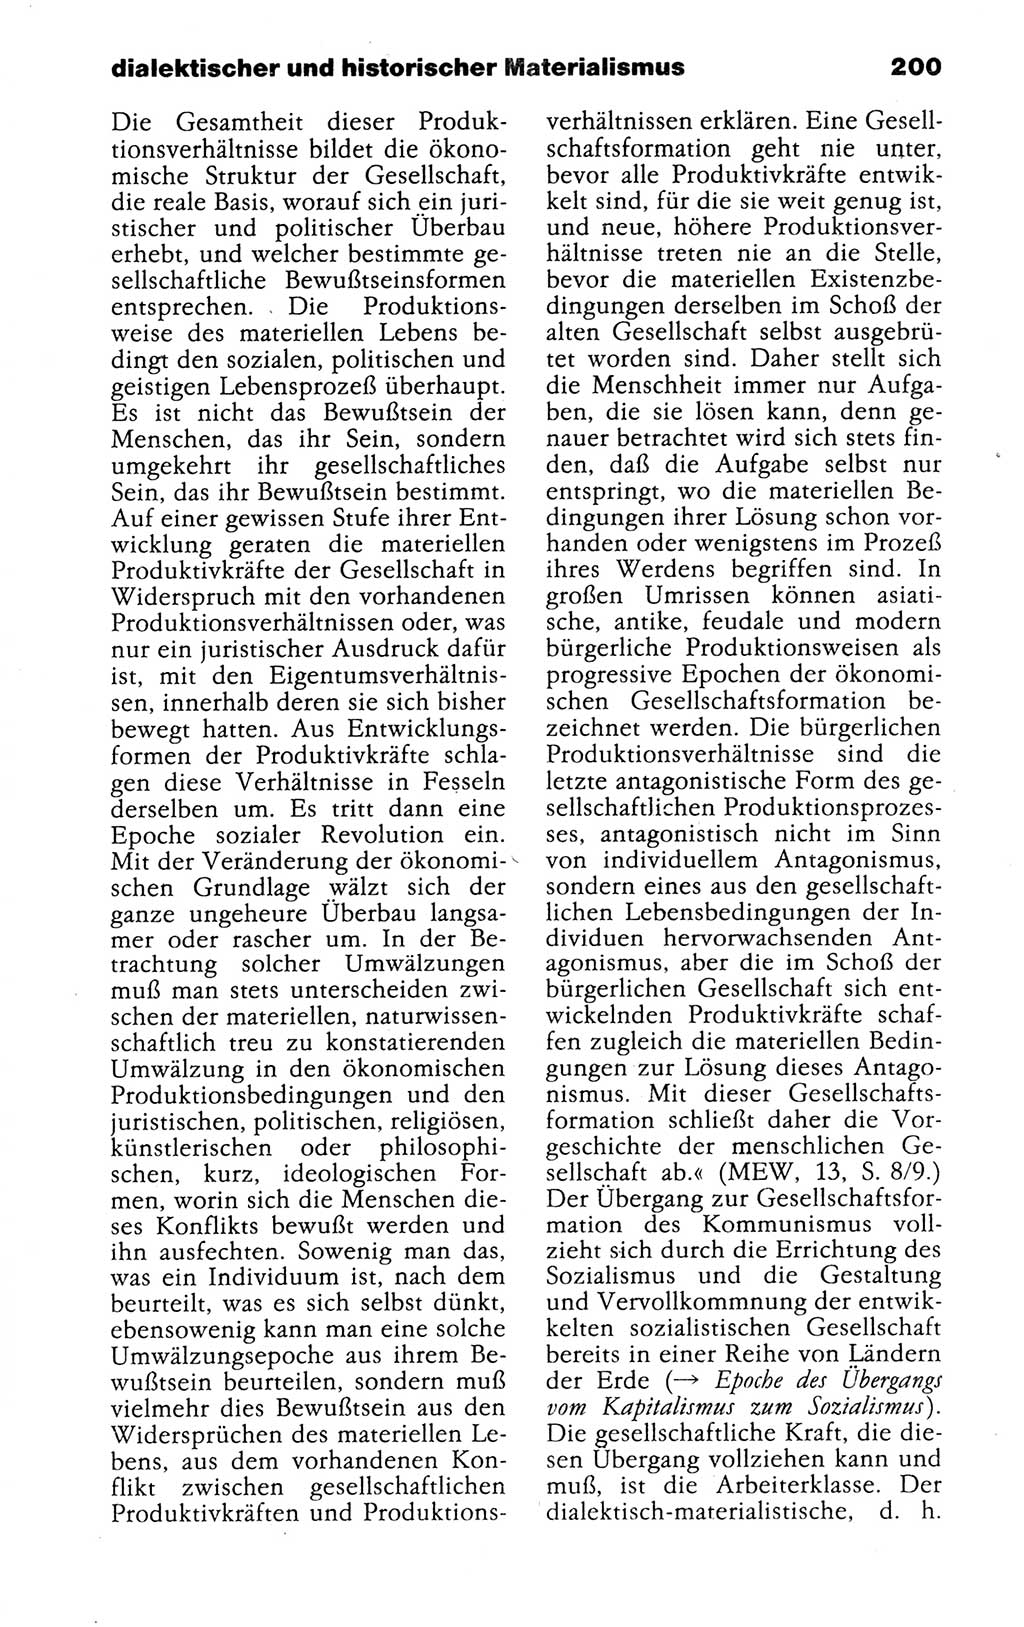 Kleines politisches Wörterbuch [Deutsche Demokratische Republik (DDR)] 1988, Seite 200 (Kl. pol. Wb. DDR 1988, S. 200)